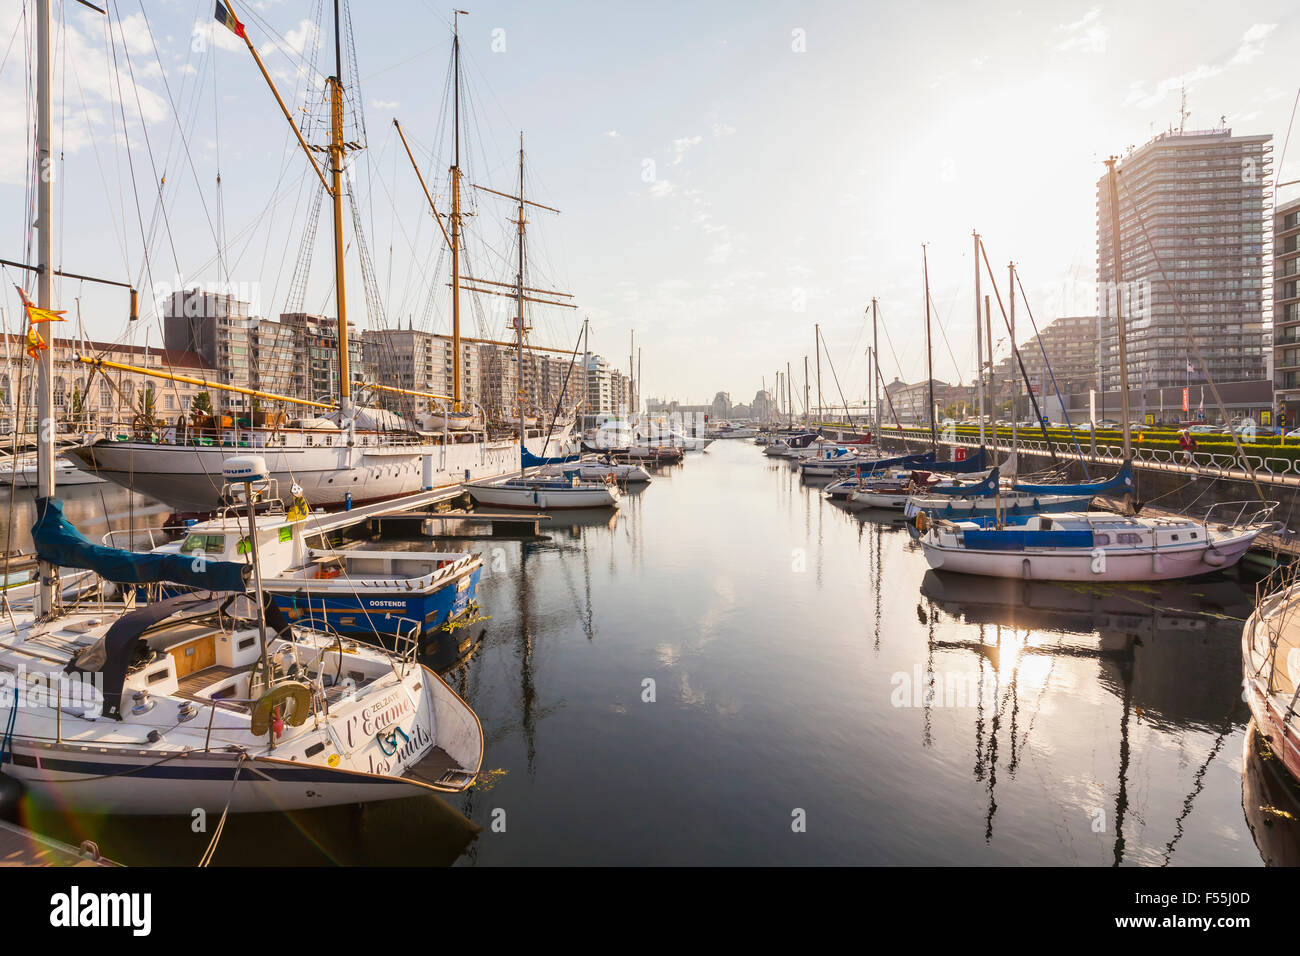 Belgique, Ostende, navire de forage Mercator et les bateaux à voile au yacht harbor Banque D'Images